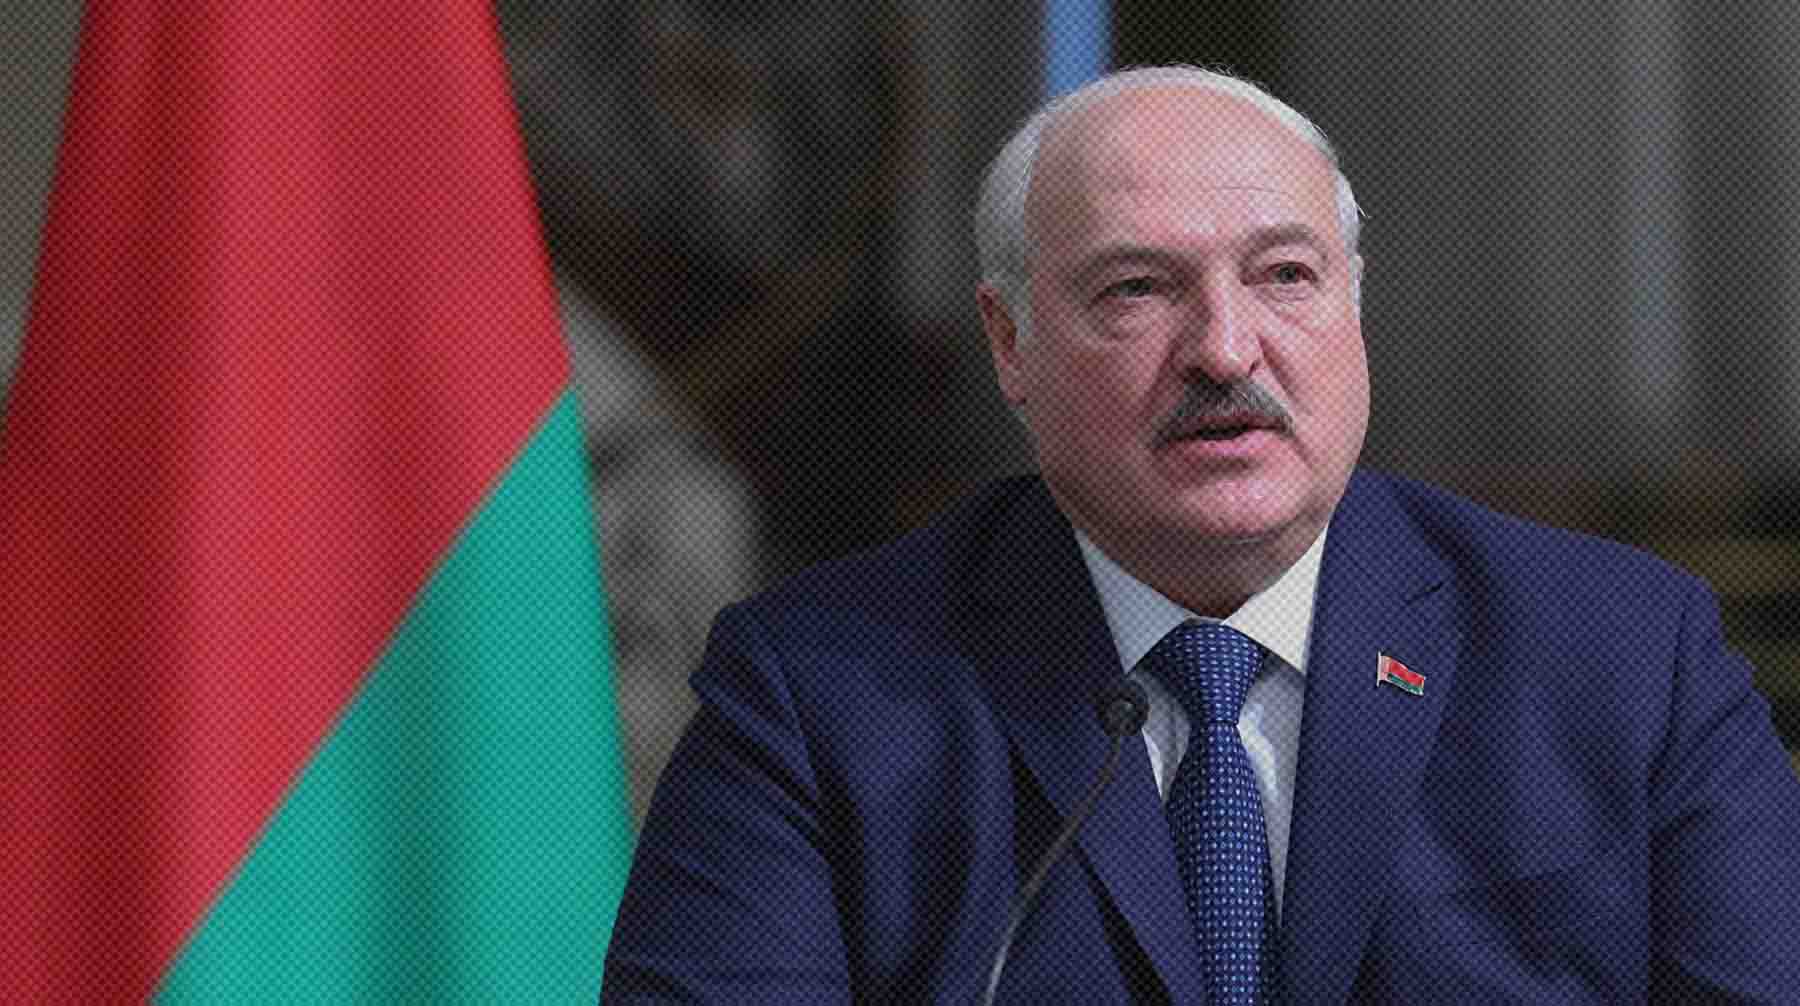 Глава республики также сообщил, что в Белоруссии обнаружены несколько схронов украинских диверсантов Александр Лукашенко